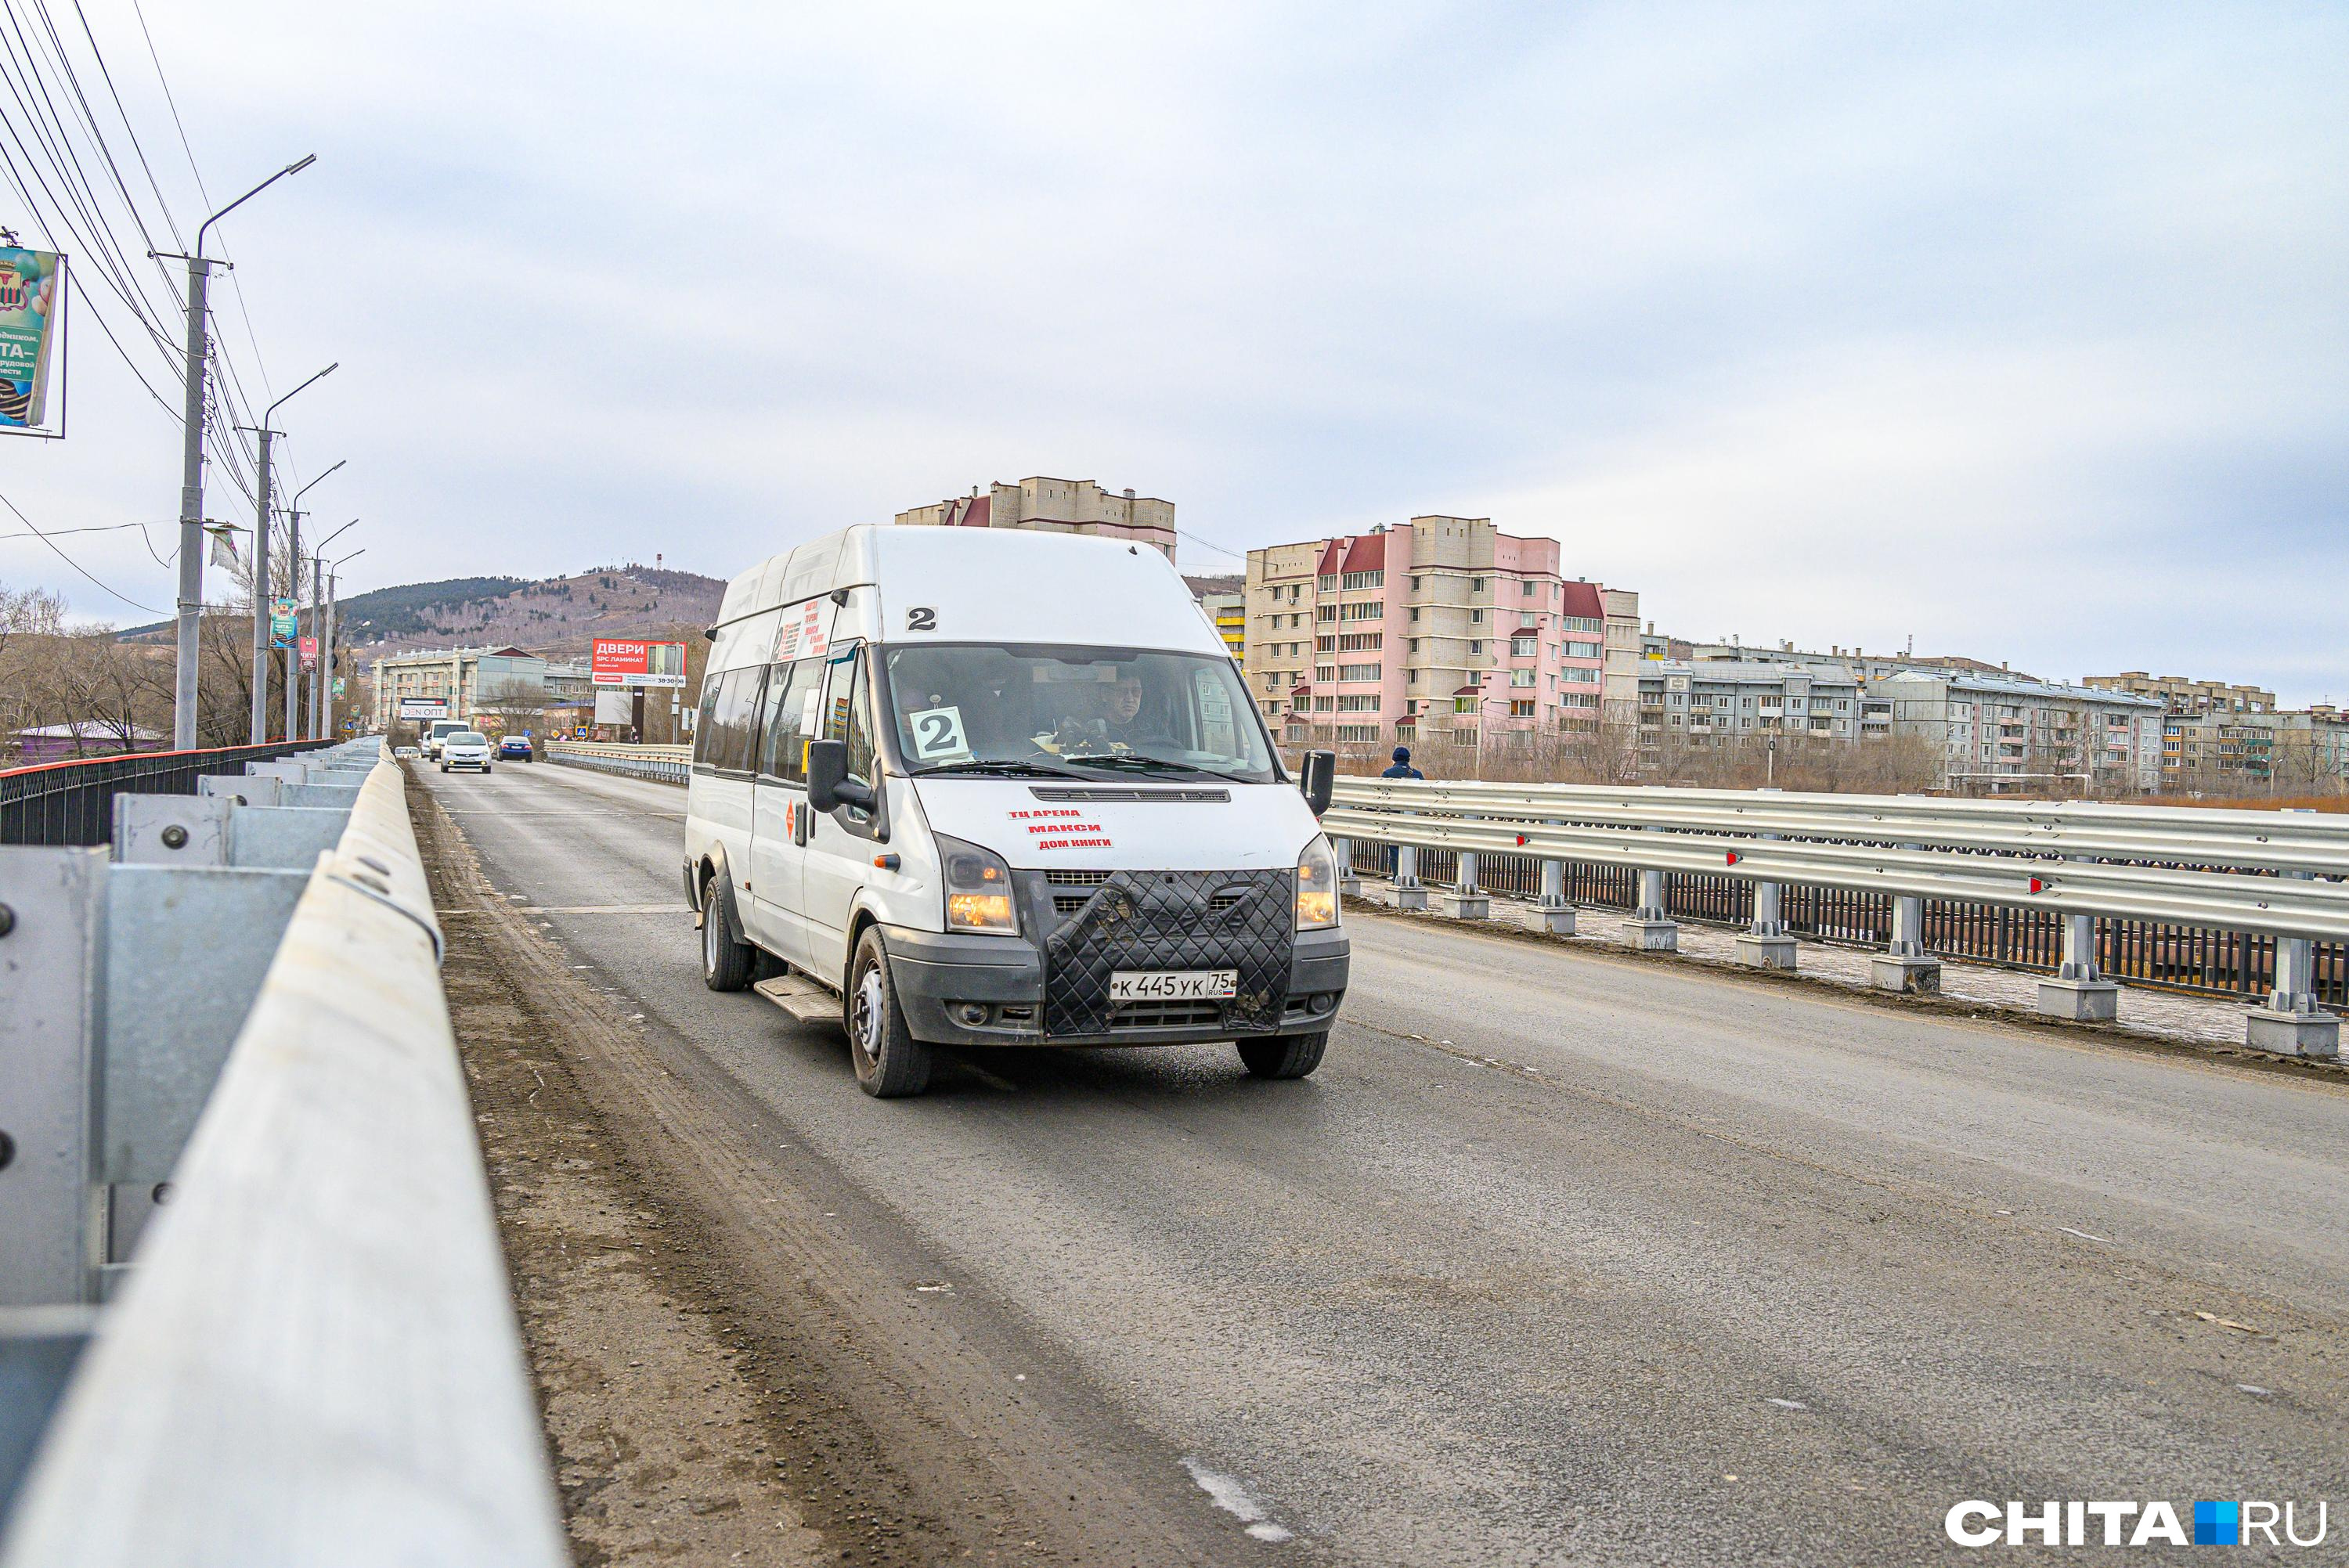 Стоимость проезда в маршрутке № 27 вырастет до 40 рублей в Чите